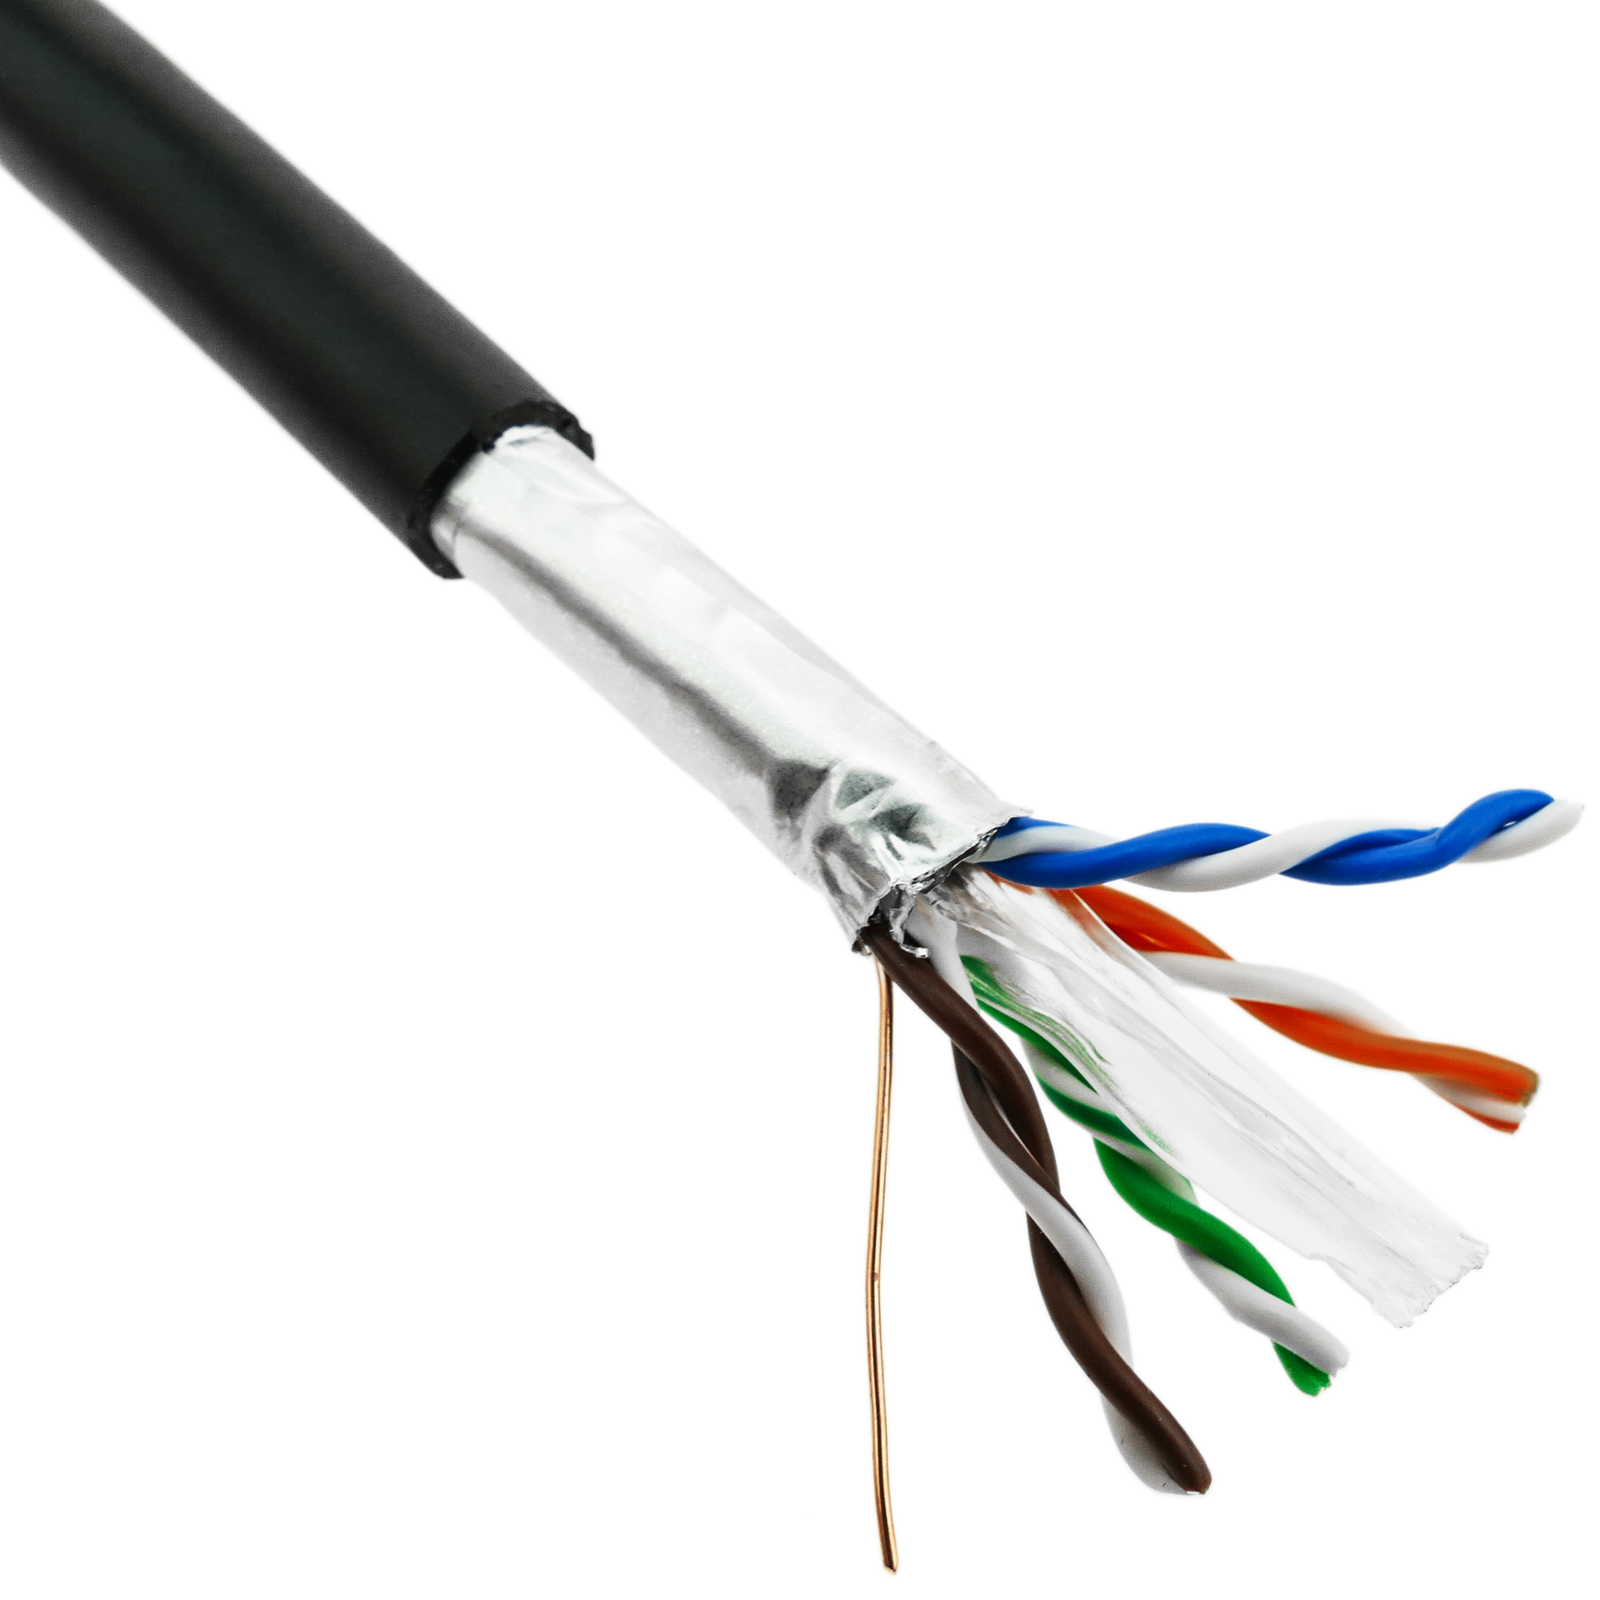 Câble réseau Cat6 SFTP de 2 m - Noir (N6SPAT2MBK) - Câbles Cat 6